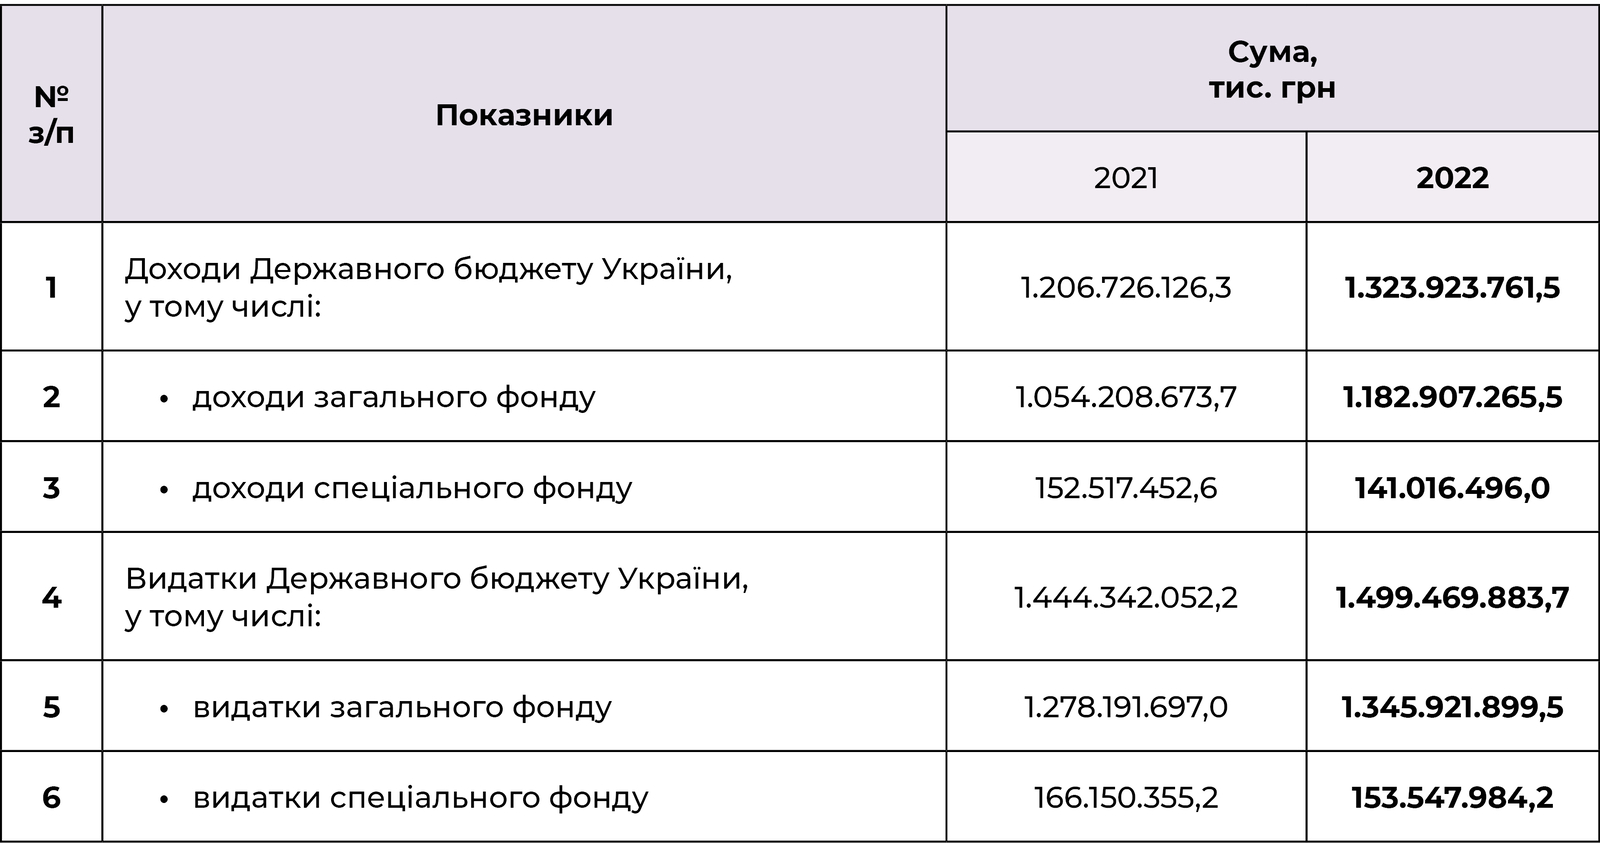 Доходи й видатки Державного бюджету України